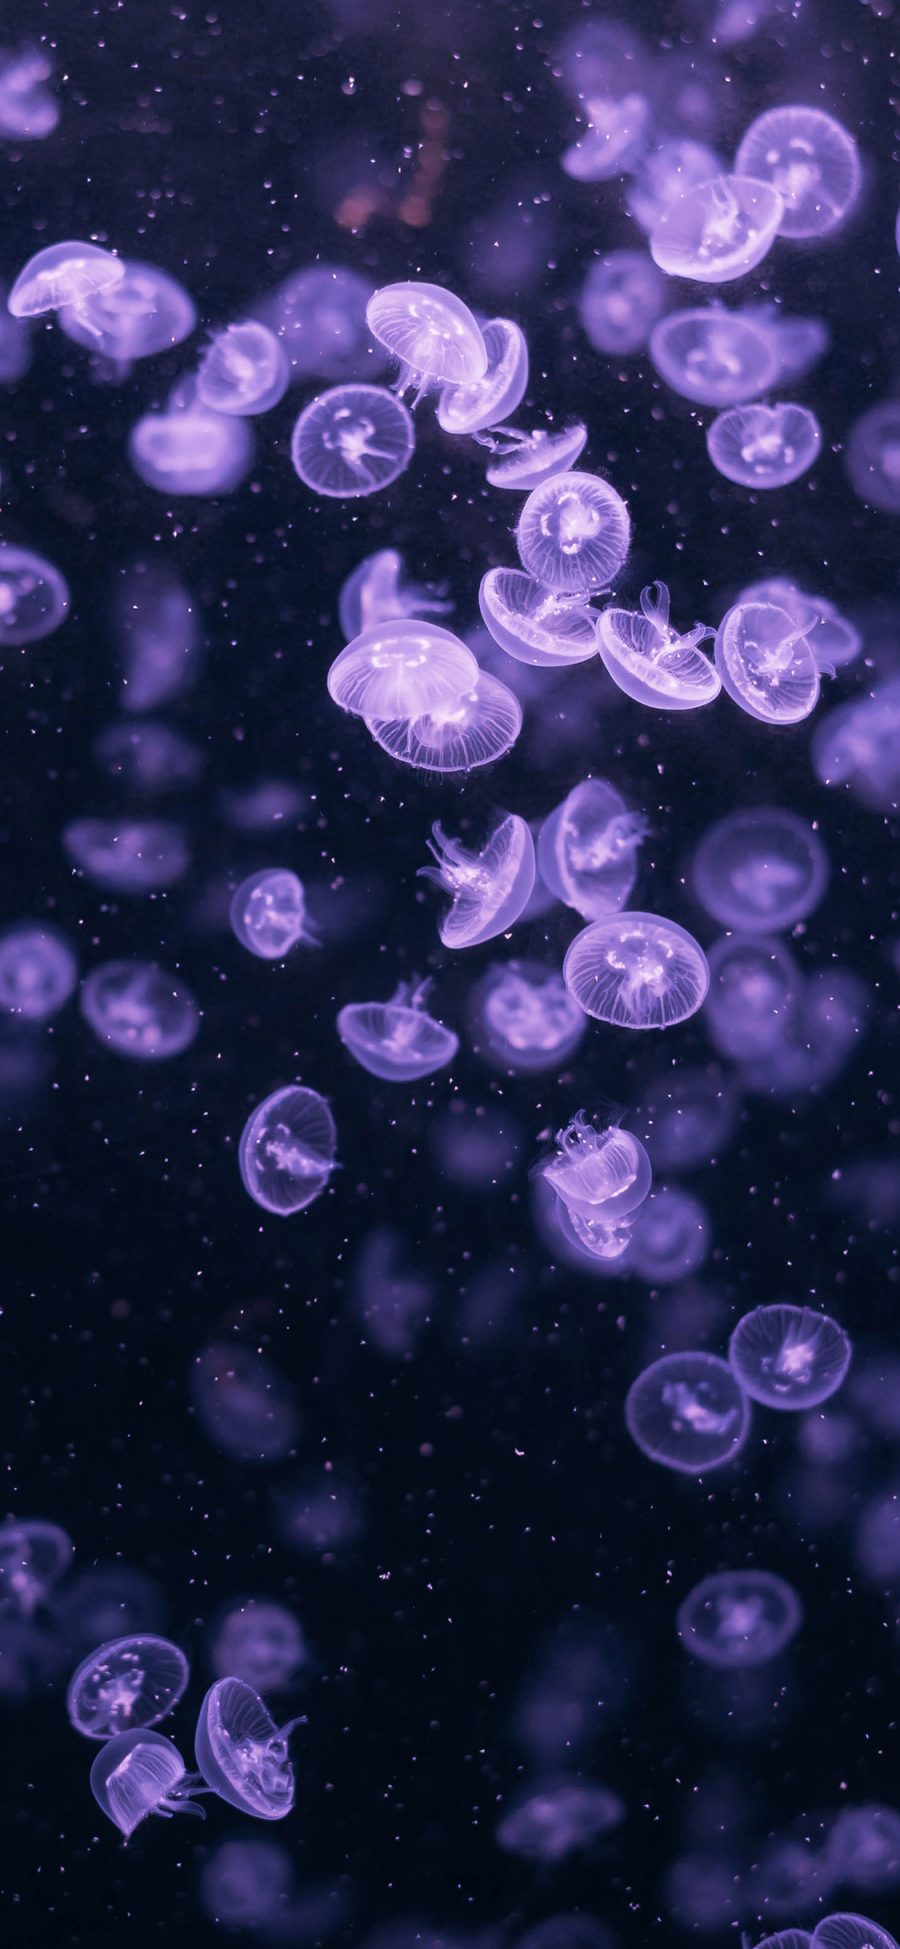 [2436×1125]水母 海洋生物 游动 紫色 透明 苹果手机壁纸图片